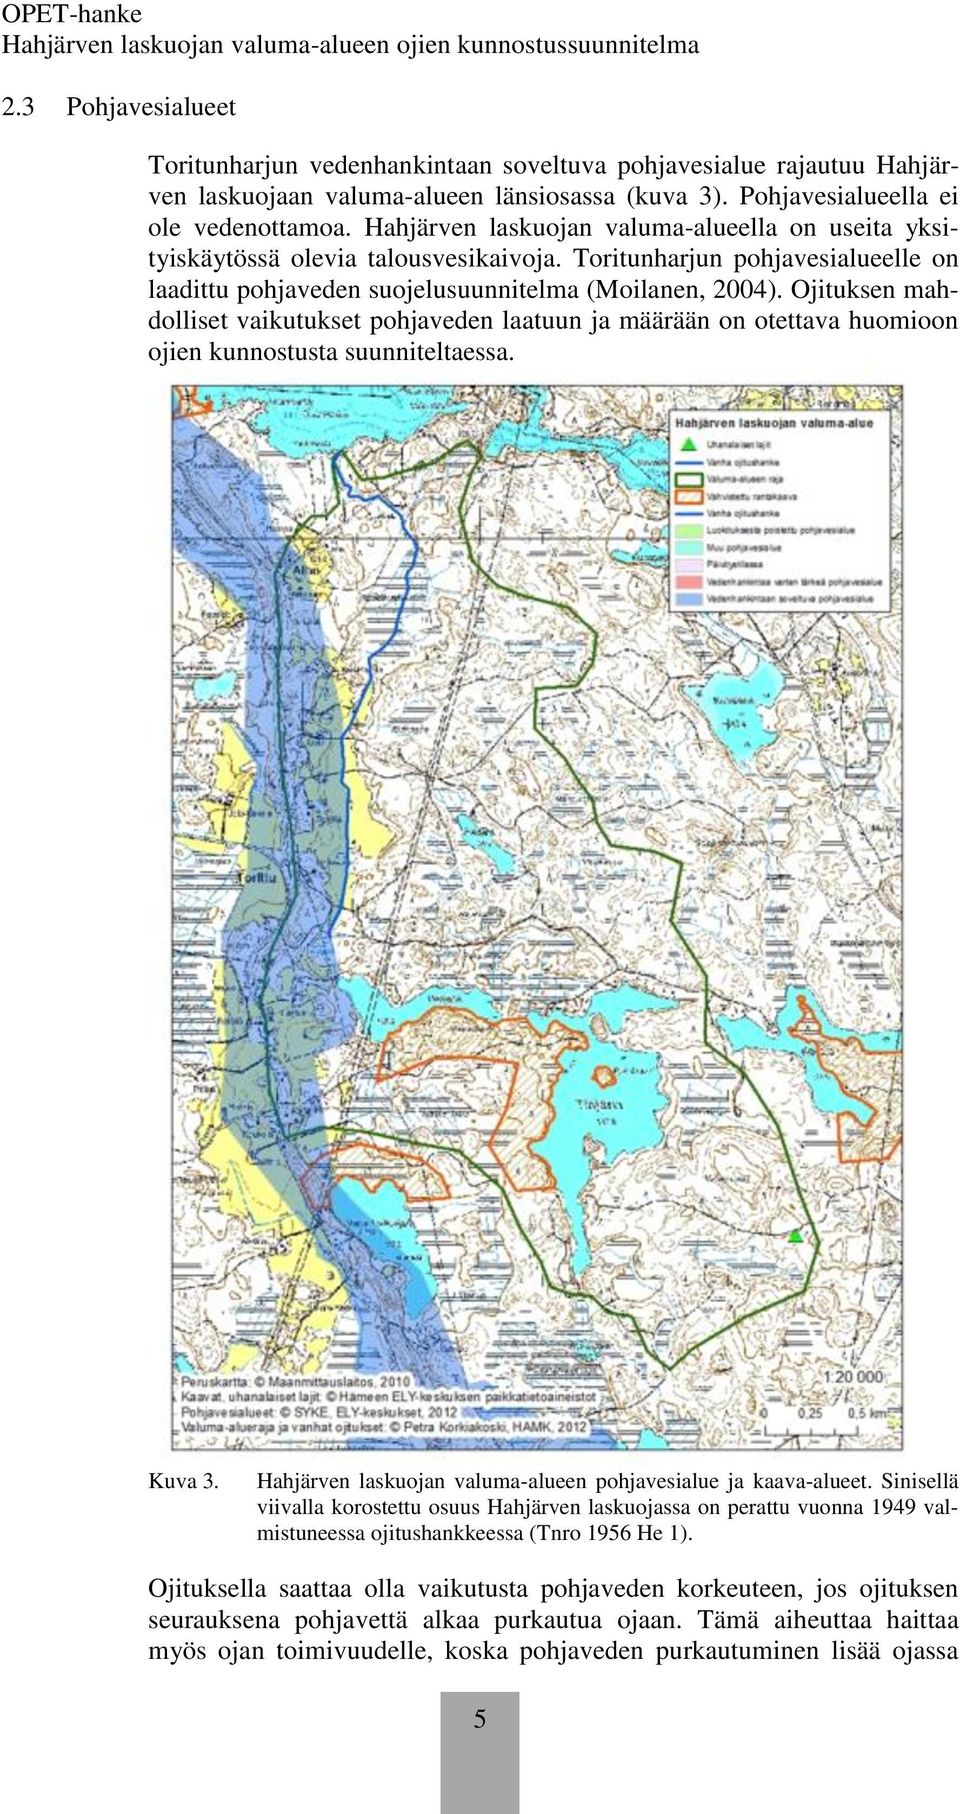 Ojituksen mahdolliset vaikutukset pohjaveden laatuun ja määrään on otettava huomioon ojien kunnostusta suunniteltaessa. Kuva 3. Hahjärven laskuojan valuma-alueen pohjavesialue ja kaava-alueet.